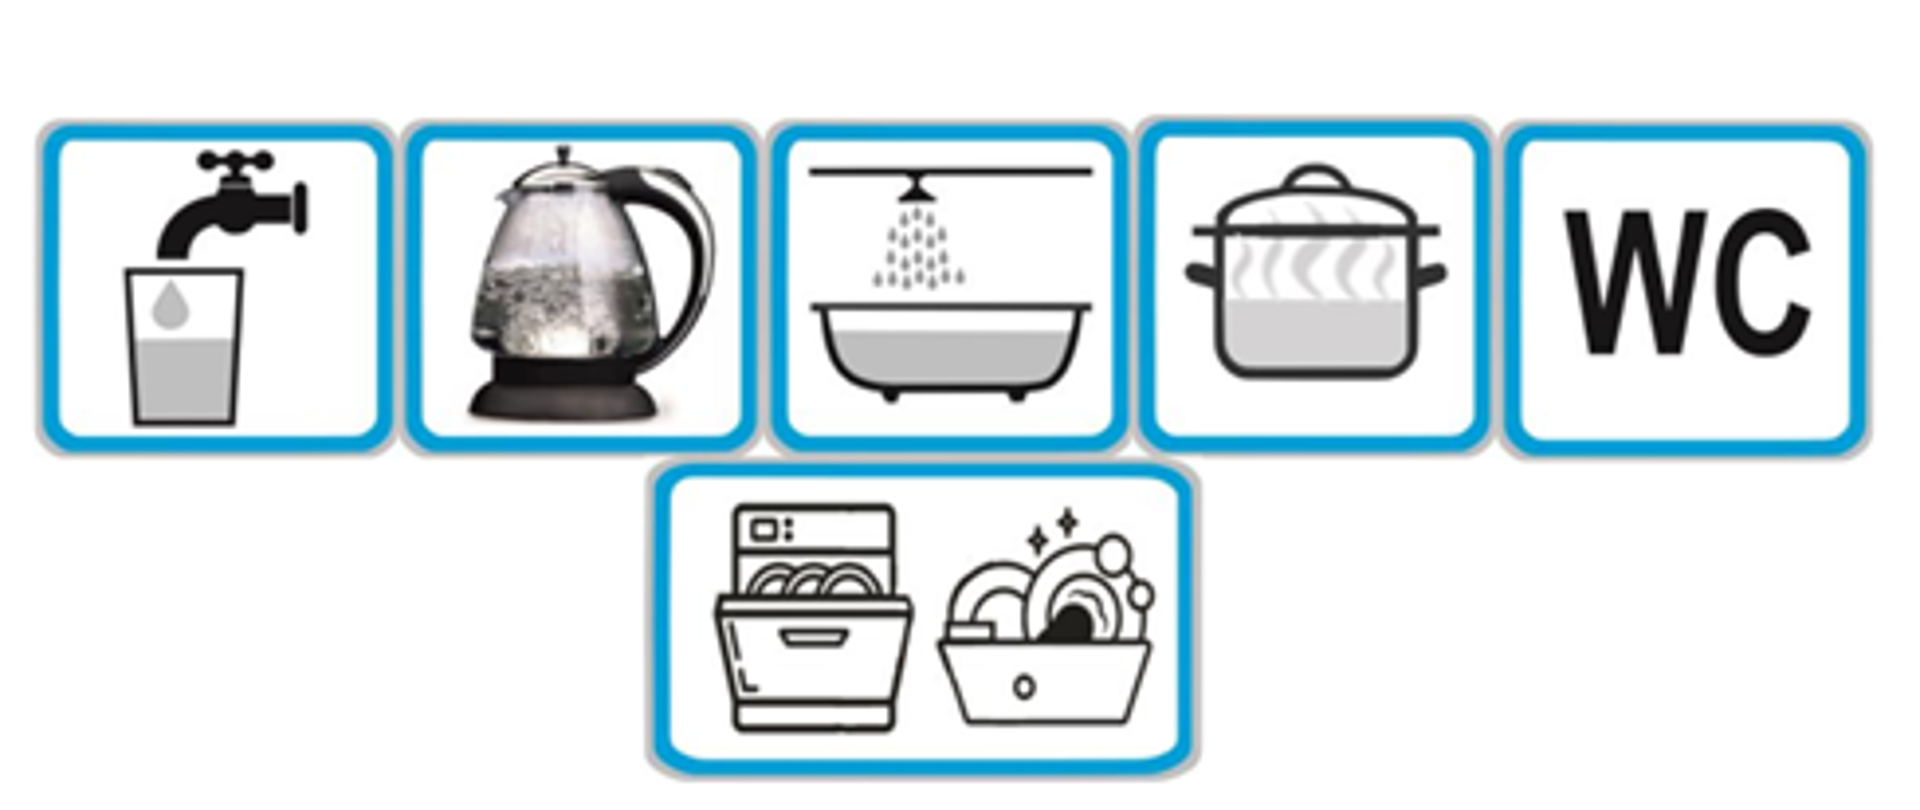 ikony informujące o możliwości spożywania wody